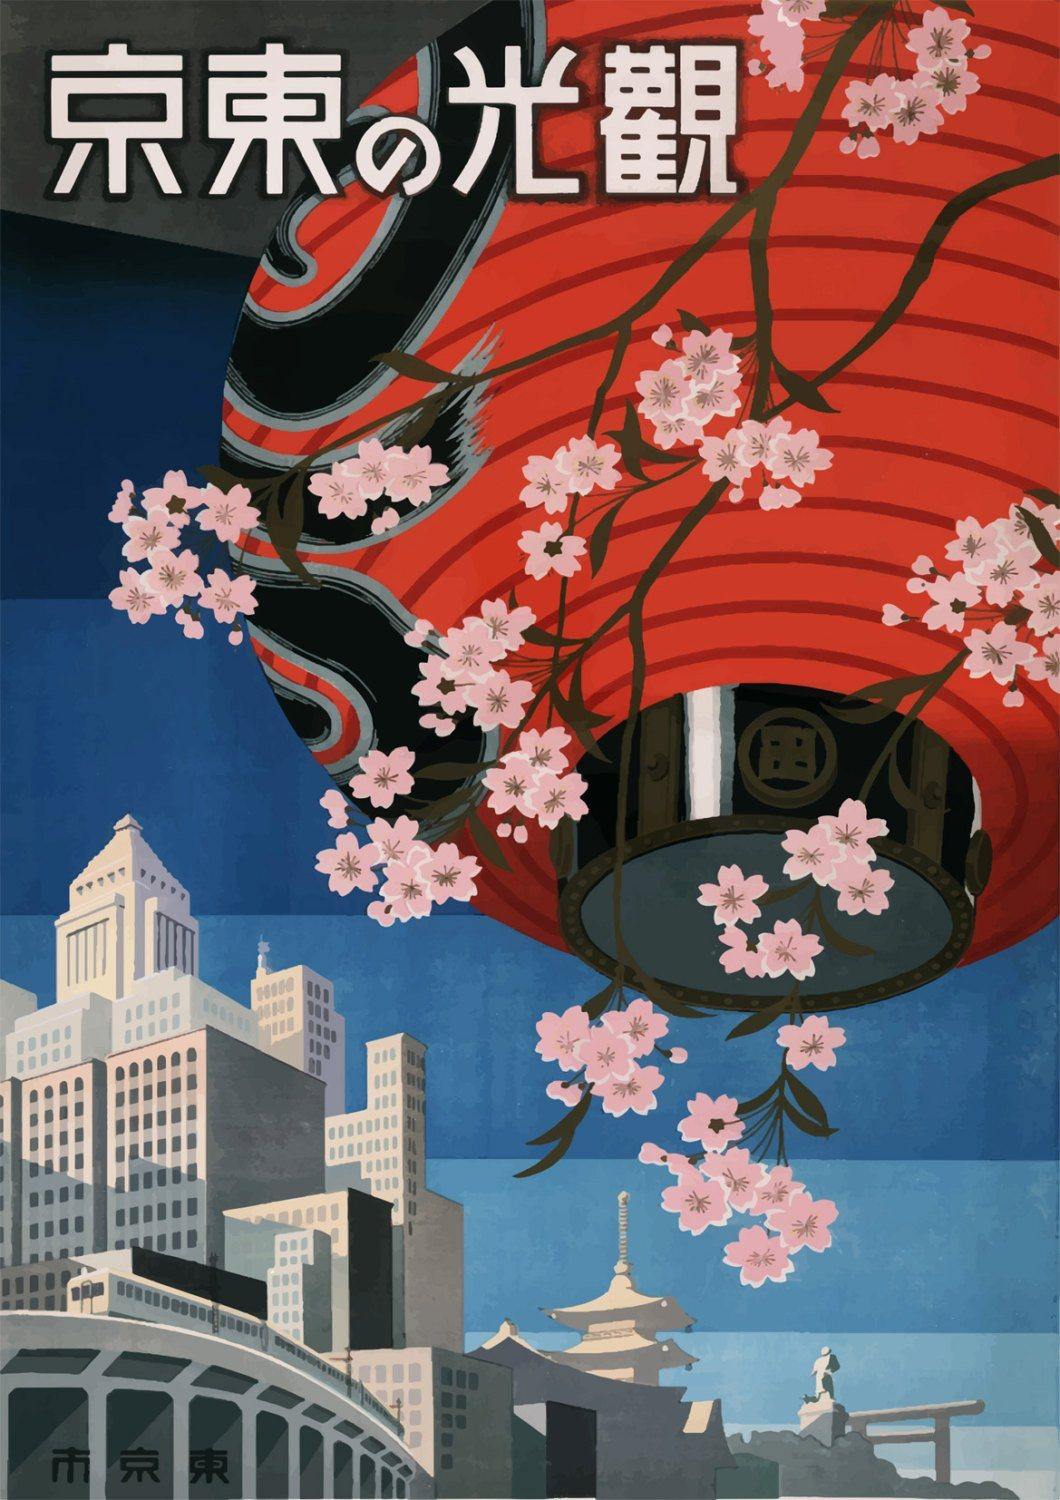 Affiche de voyage au Japon: impression de lanterne japonaise Vintage